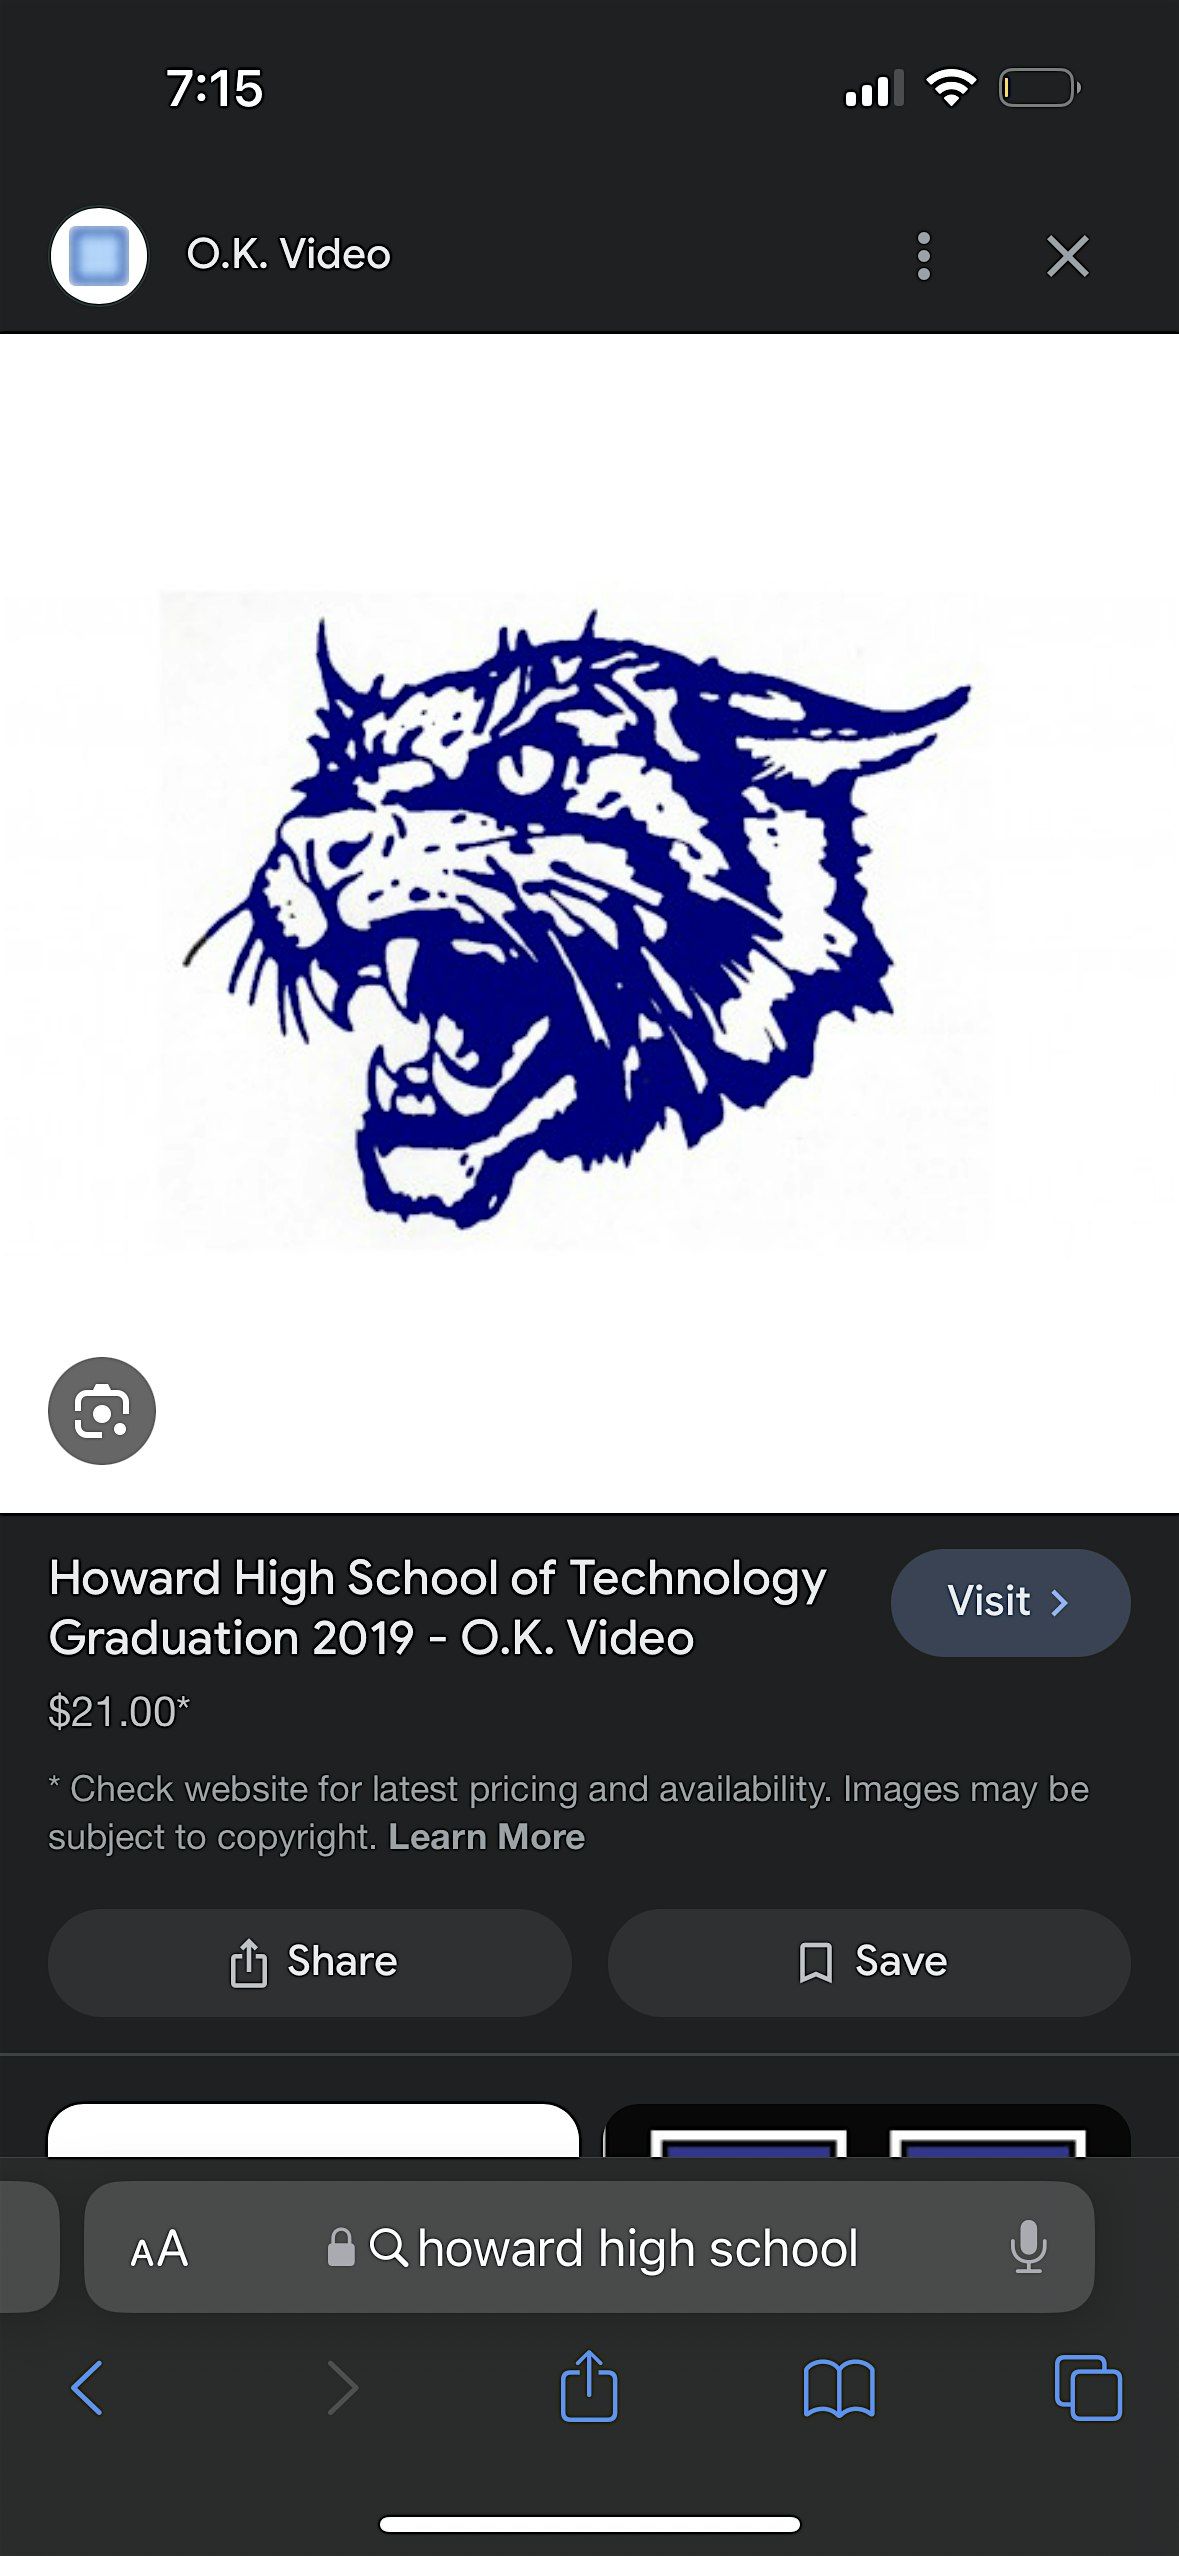 Howard High School of Technology 2004 Class Reunion